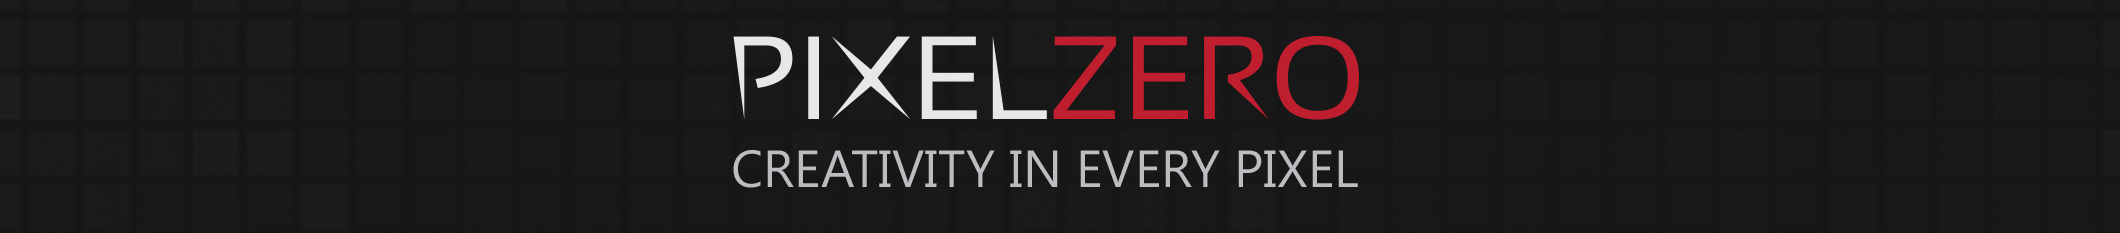 Pixel Zero profil başlığı